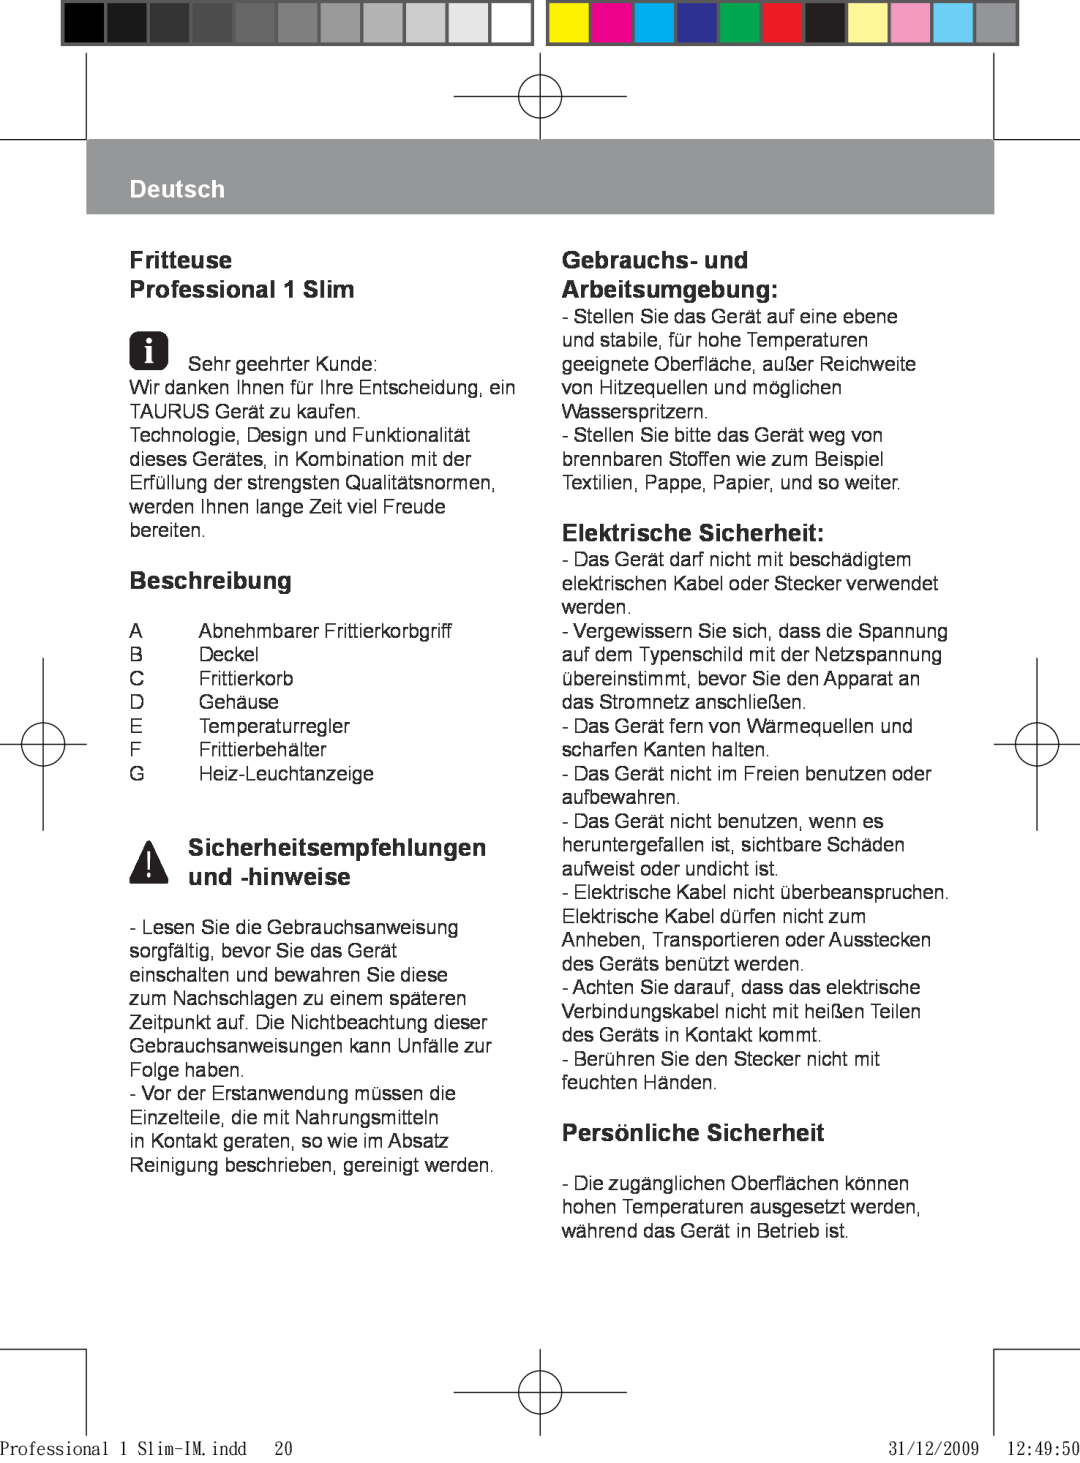 Taurus Group manual Deutsch, Fritteuse Professional 1 Slim, Beschreibung, Gebrauchs- und Arbeitsumgebung 